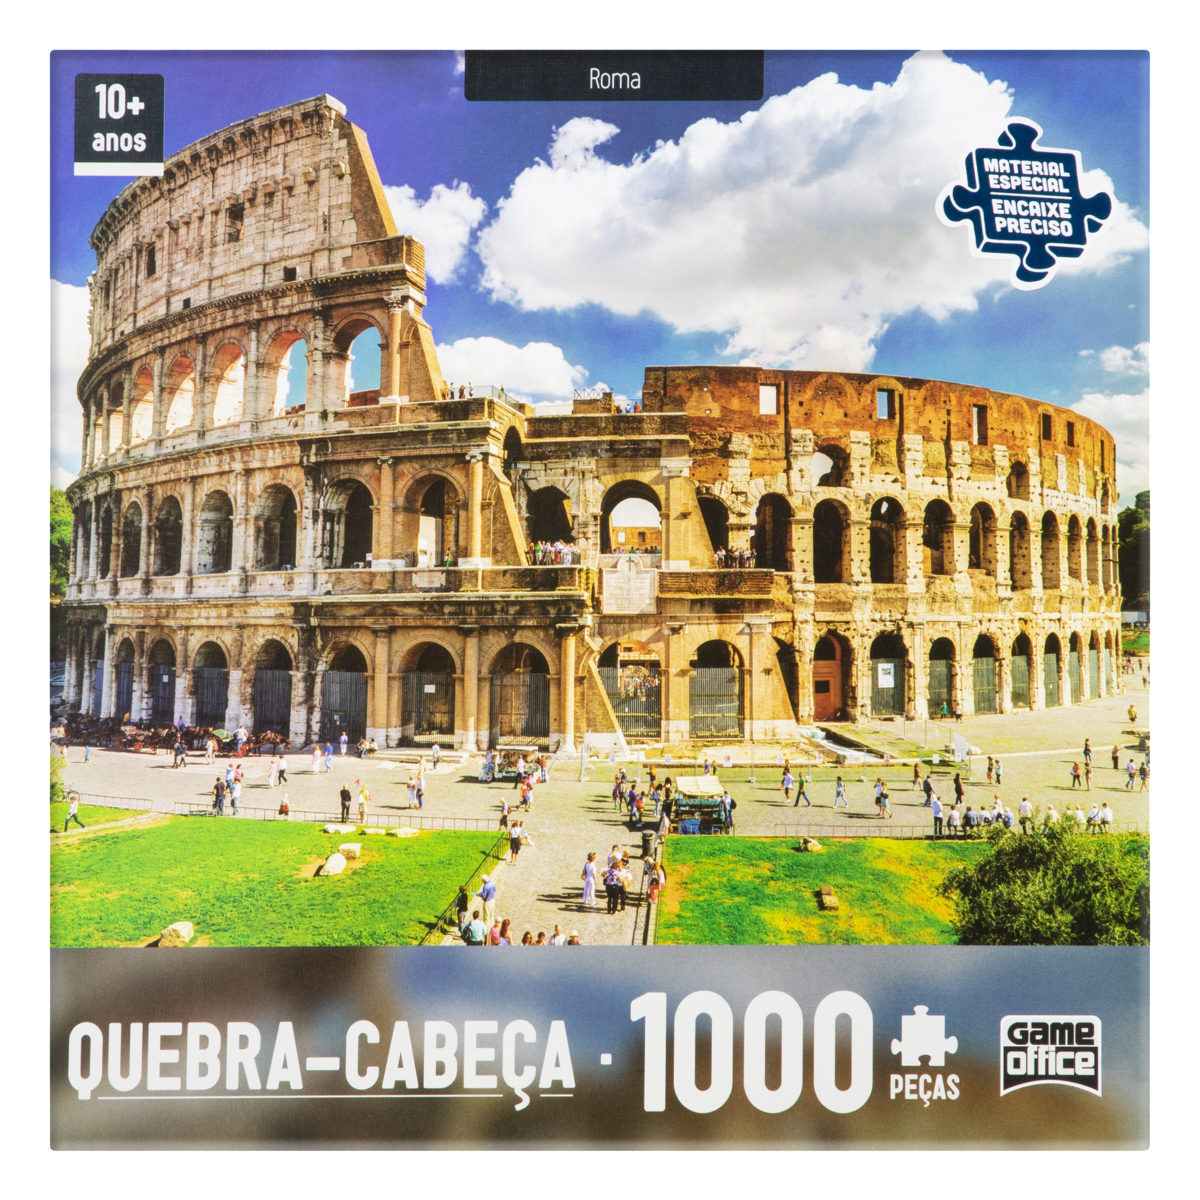 7896054020919 - QUEBRA-CABEÇA ROMA GAME OFFICE 1000 PEÇAS